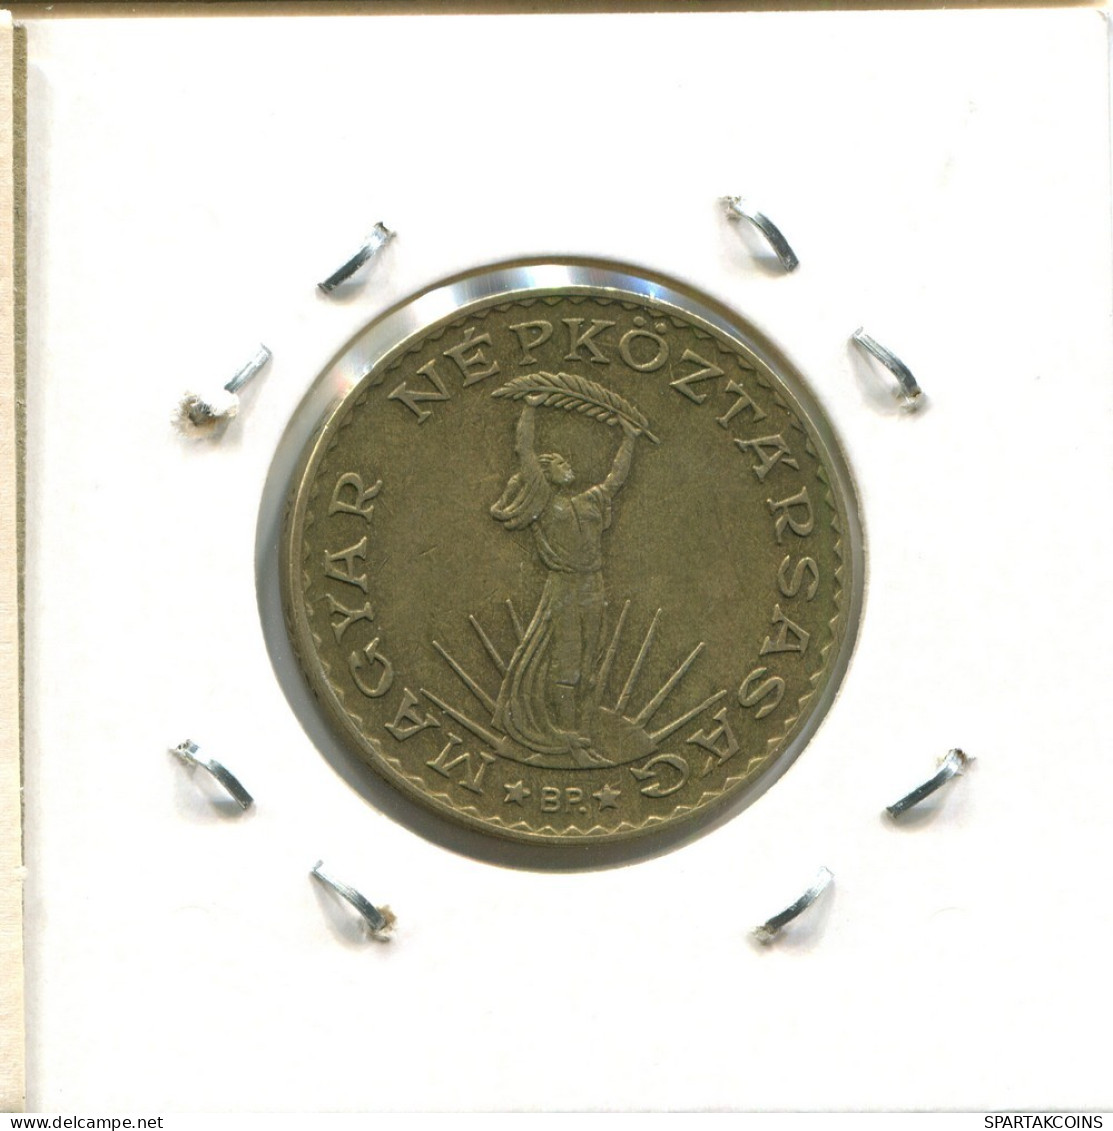 10 FORINT 1984 HUNGRÍA HUNGARY Moneda #AS873.E.A - Ungarn